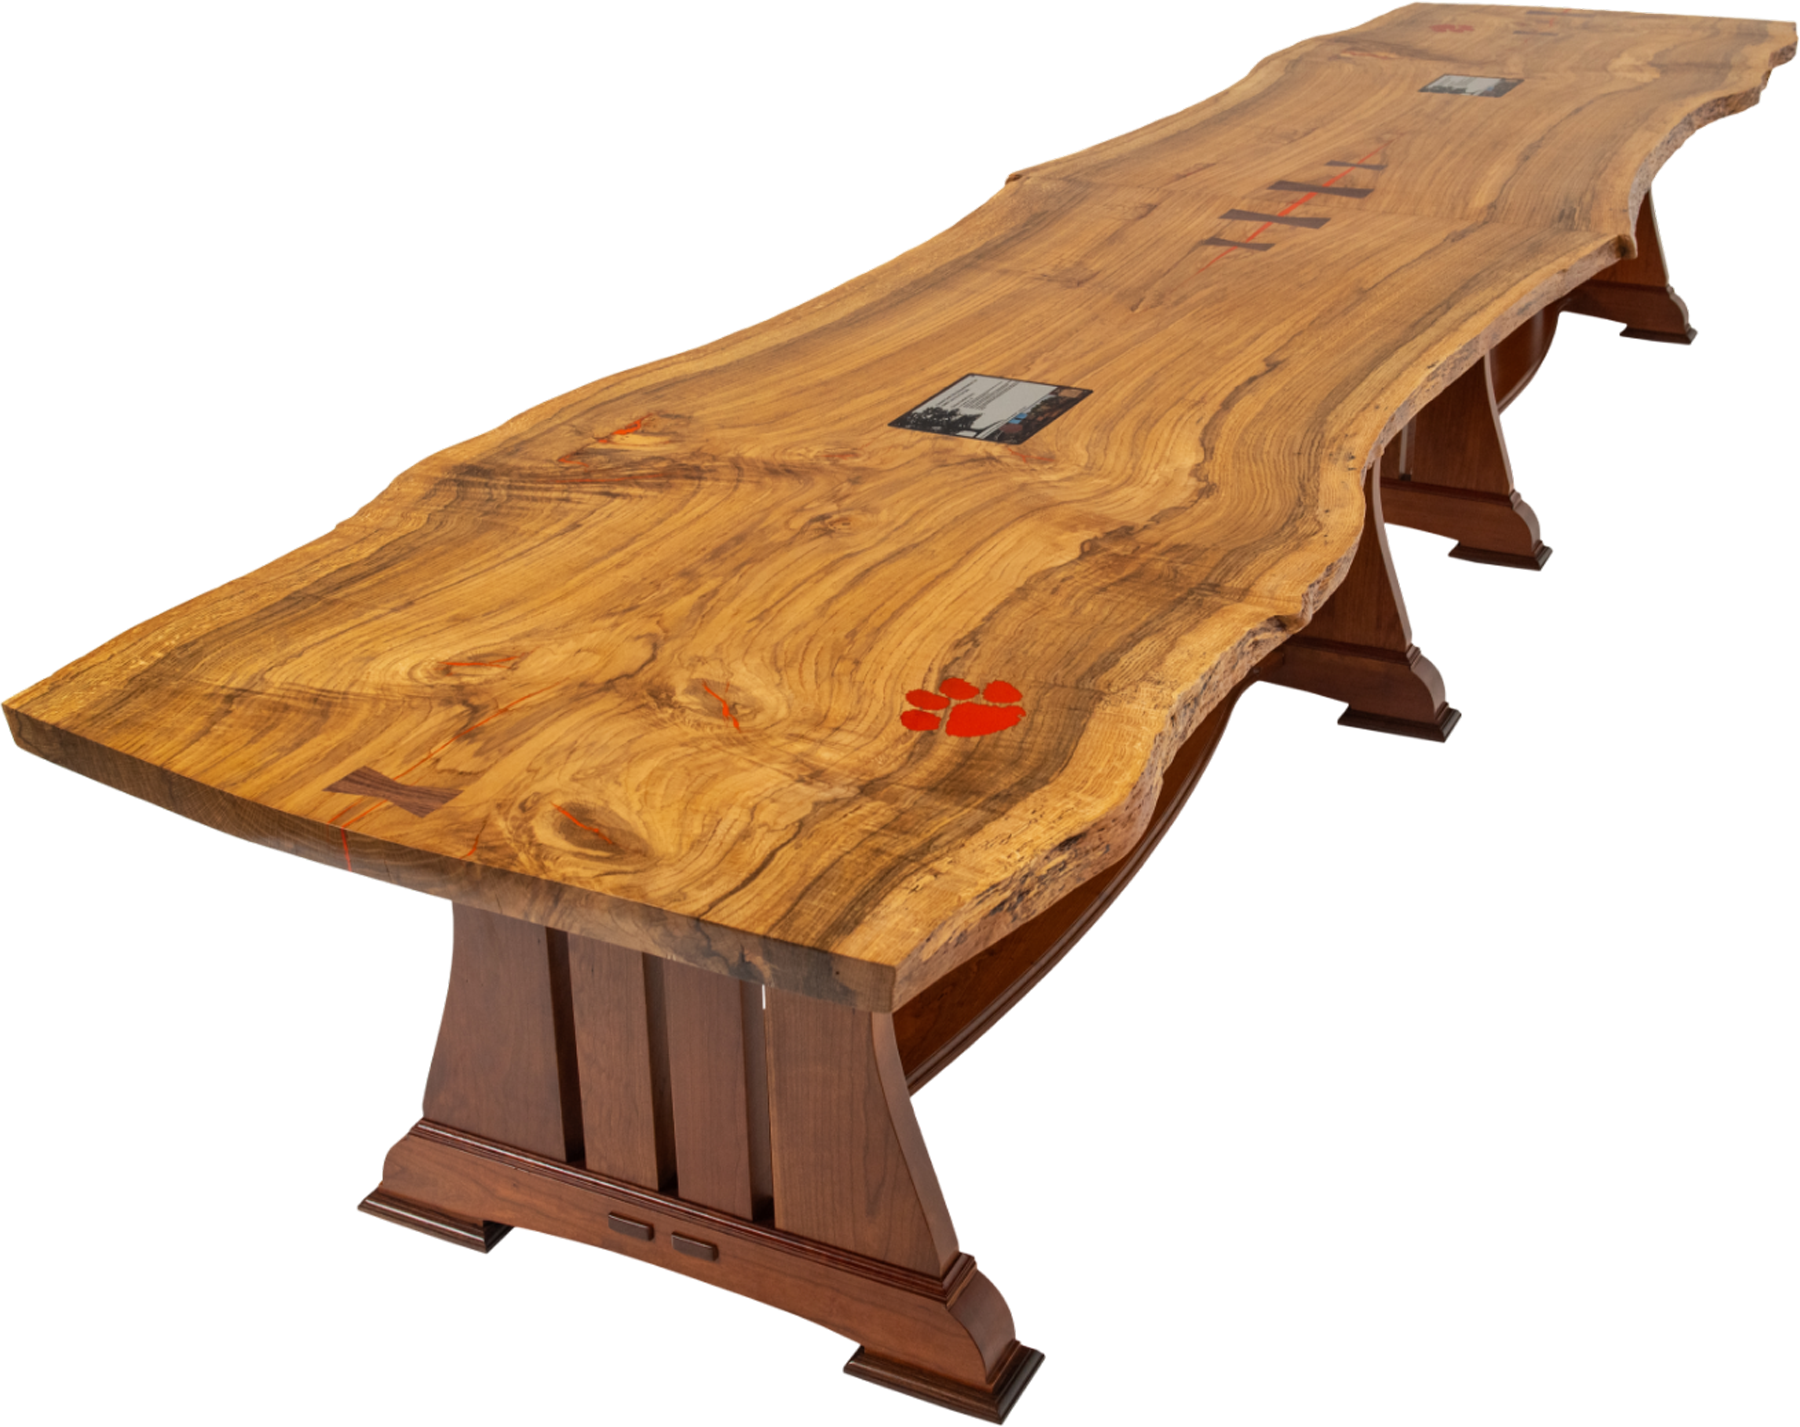 The Clemson Oak Table